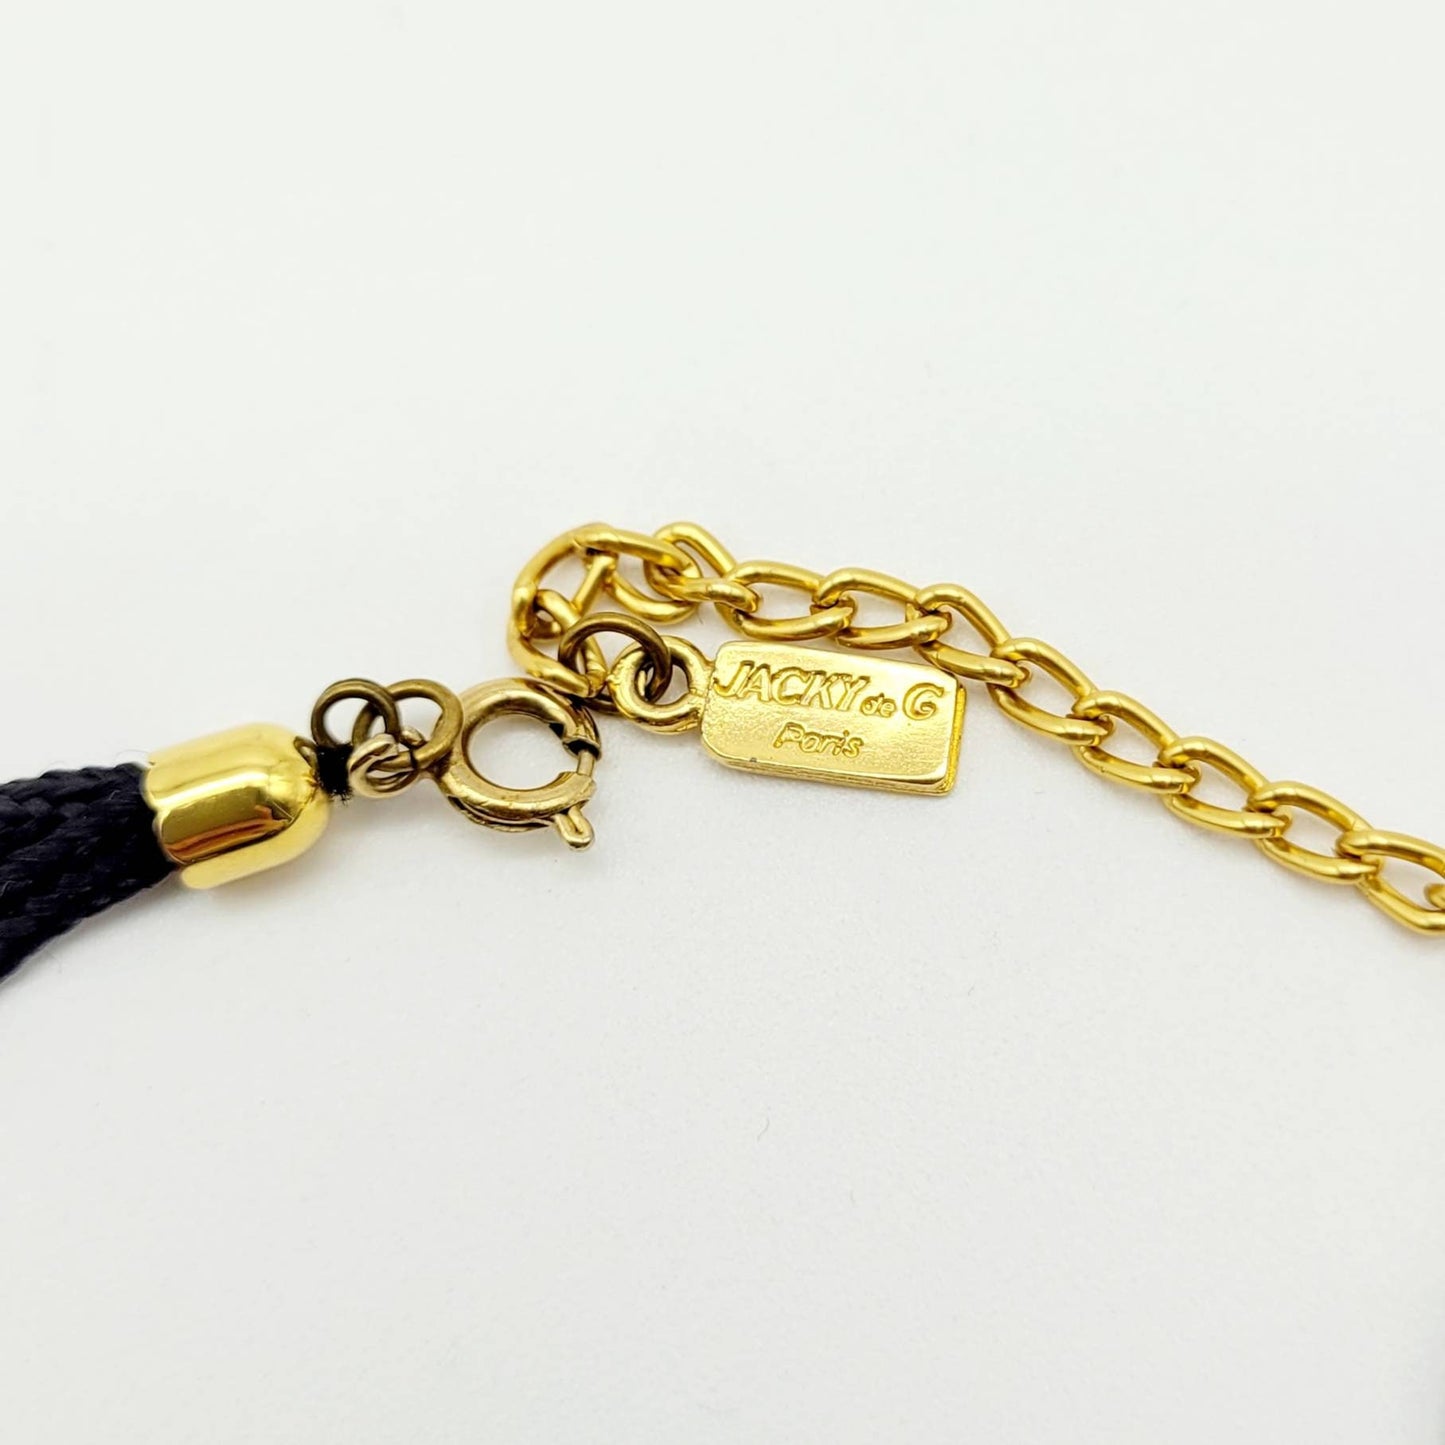 Vintage Jacky De G charm Necklace - Secondista